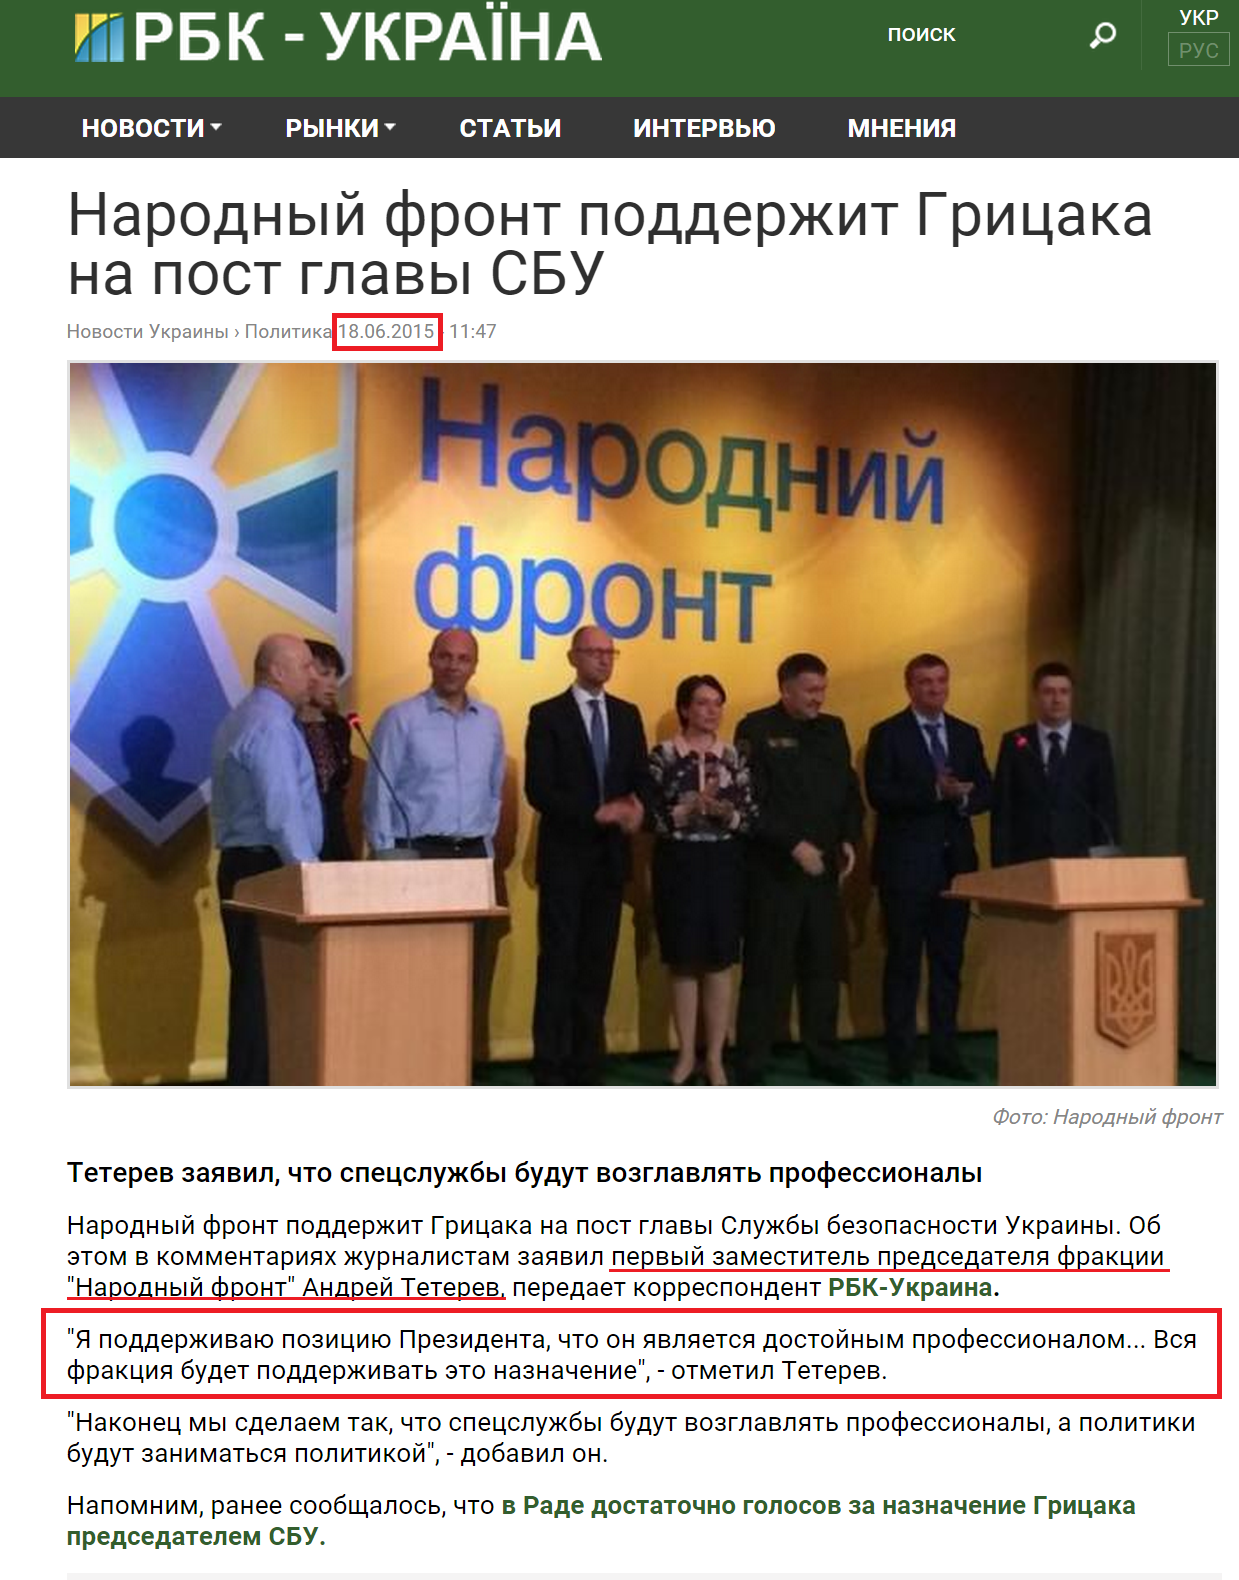 http://www.rbc.ua/rus/news/narodnyy-front-podderzhit-gritsaka-post-glavy-1434617293.html